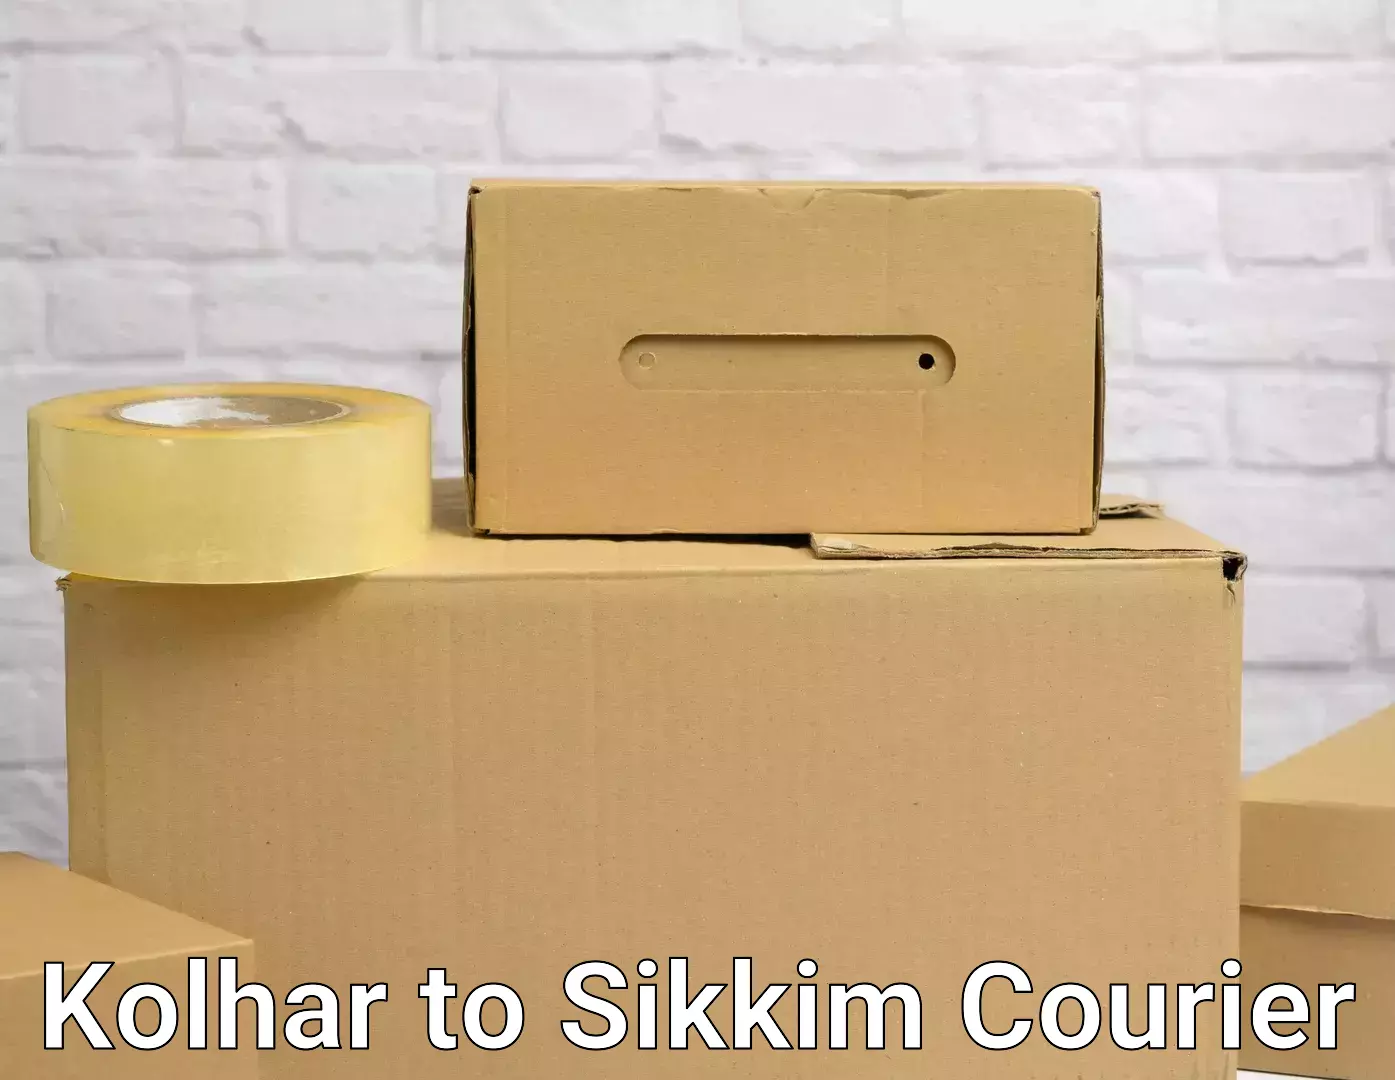 Full-service household moving Kolhar to Sikkim